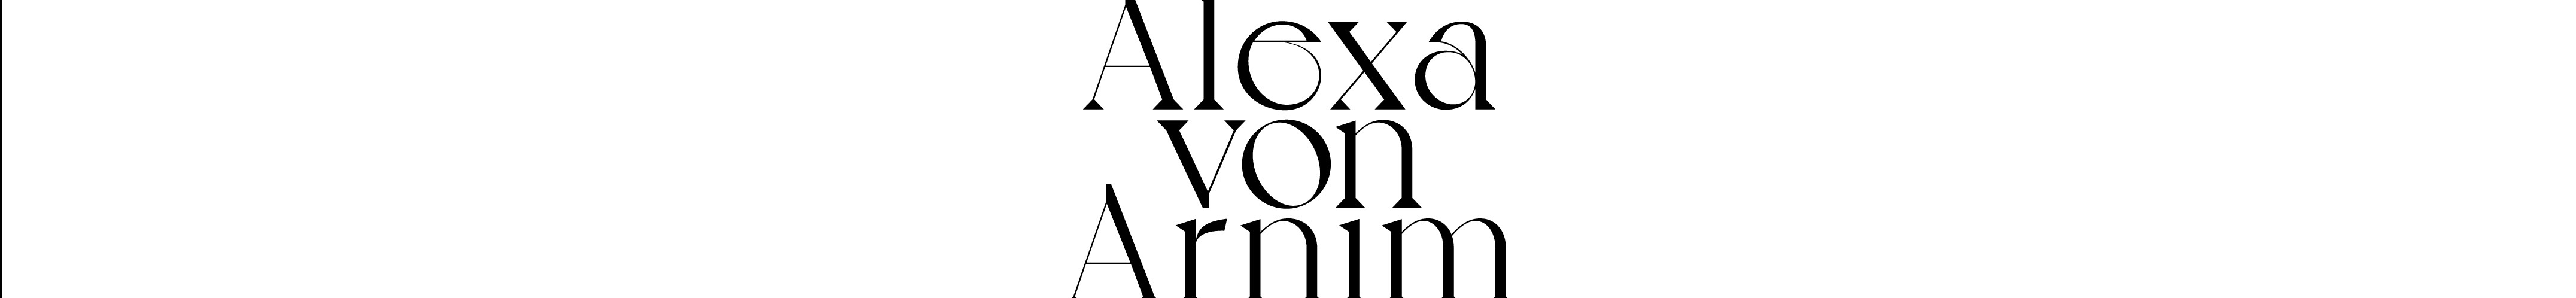 Alexa von Arnim's profile banner